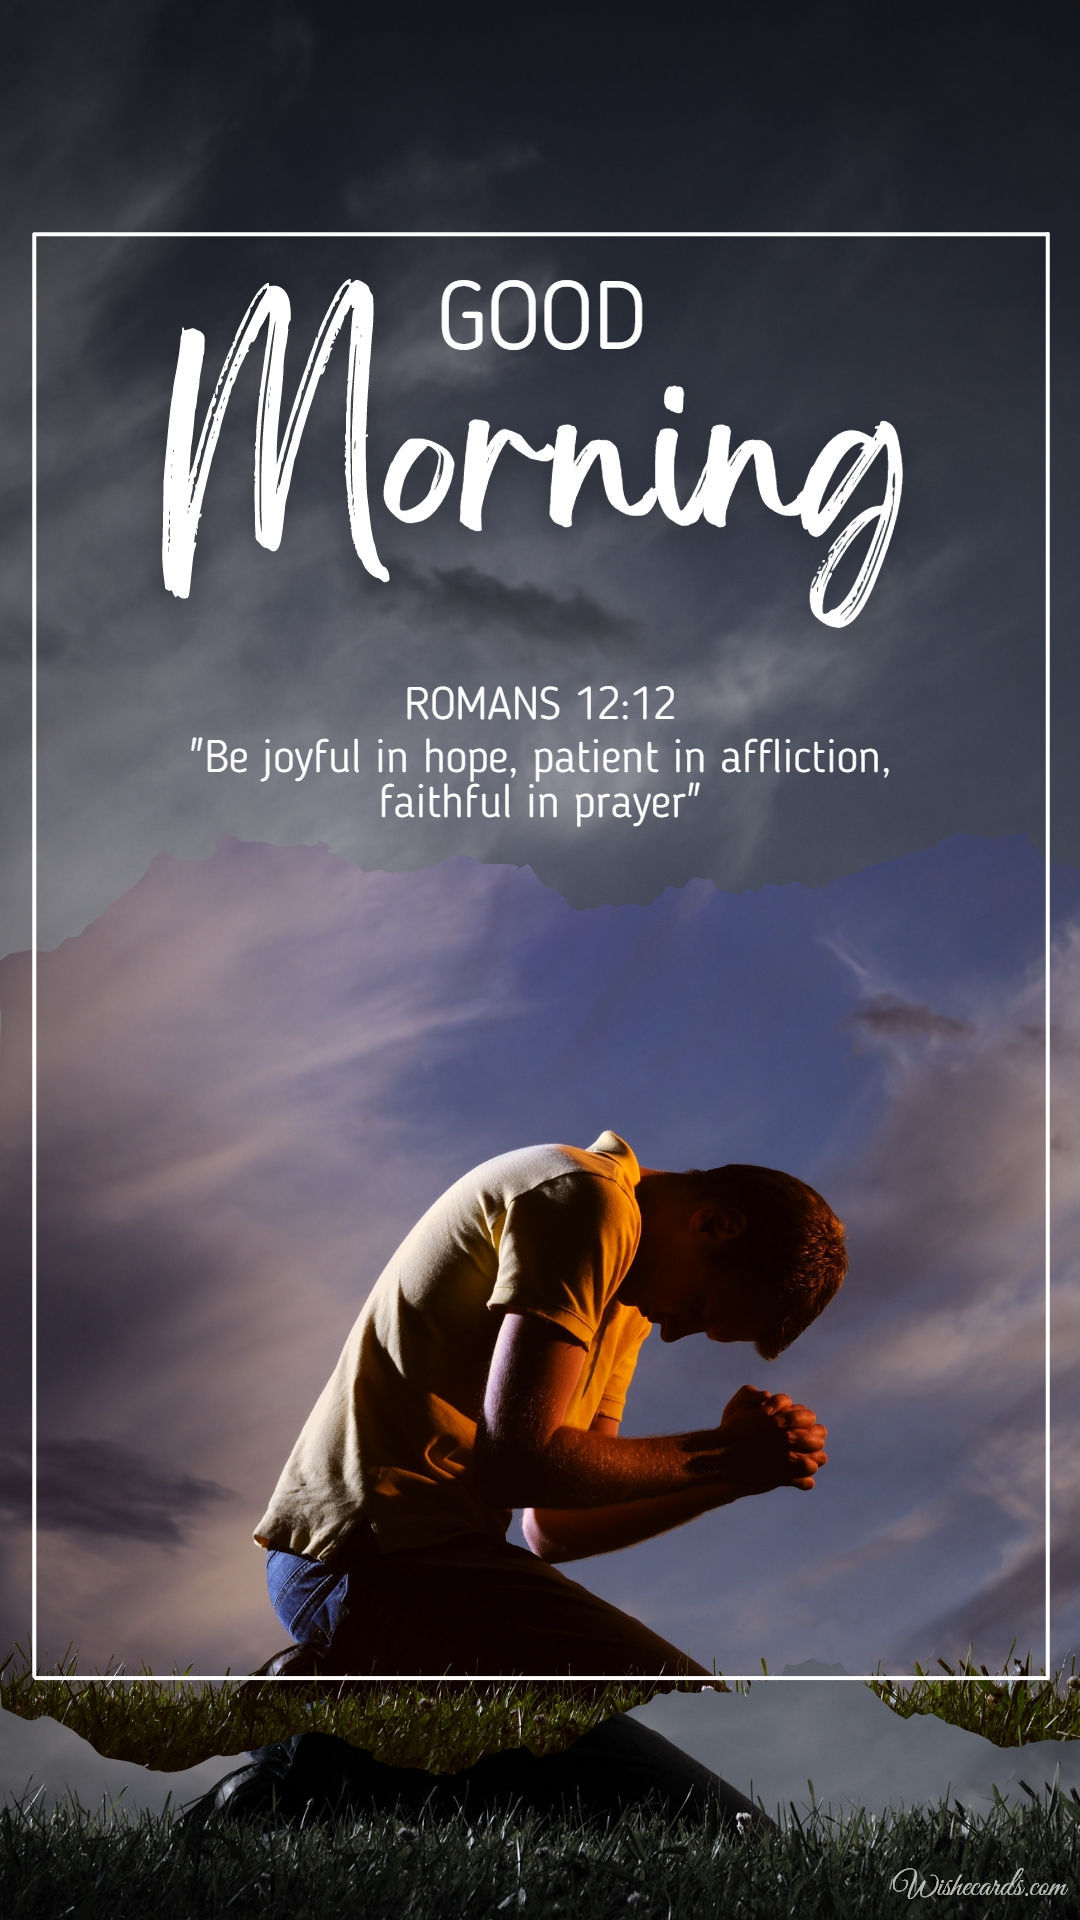 Bible Verse Good Morning Image